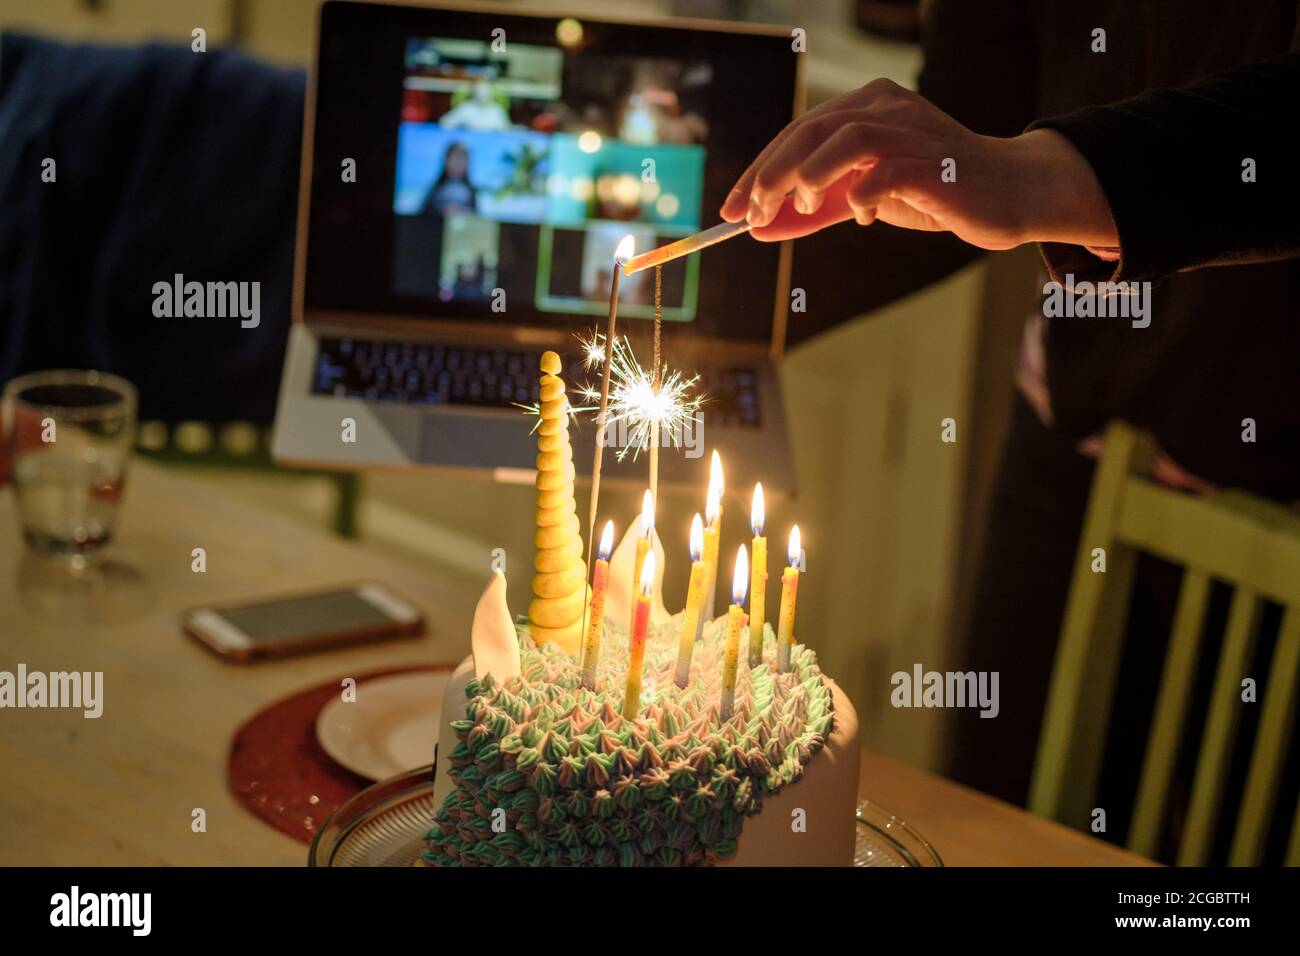 Une fête d'anniversaire d'enfant se tient en ligne (Zoom) pendant le confinement de COVID-19, Melbourne Australie Banque D'Images